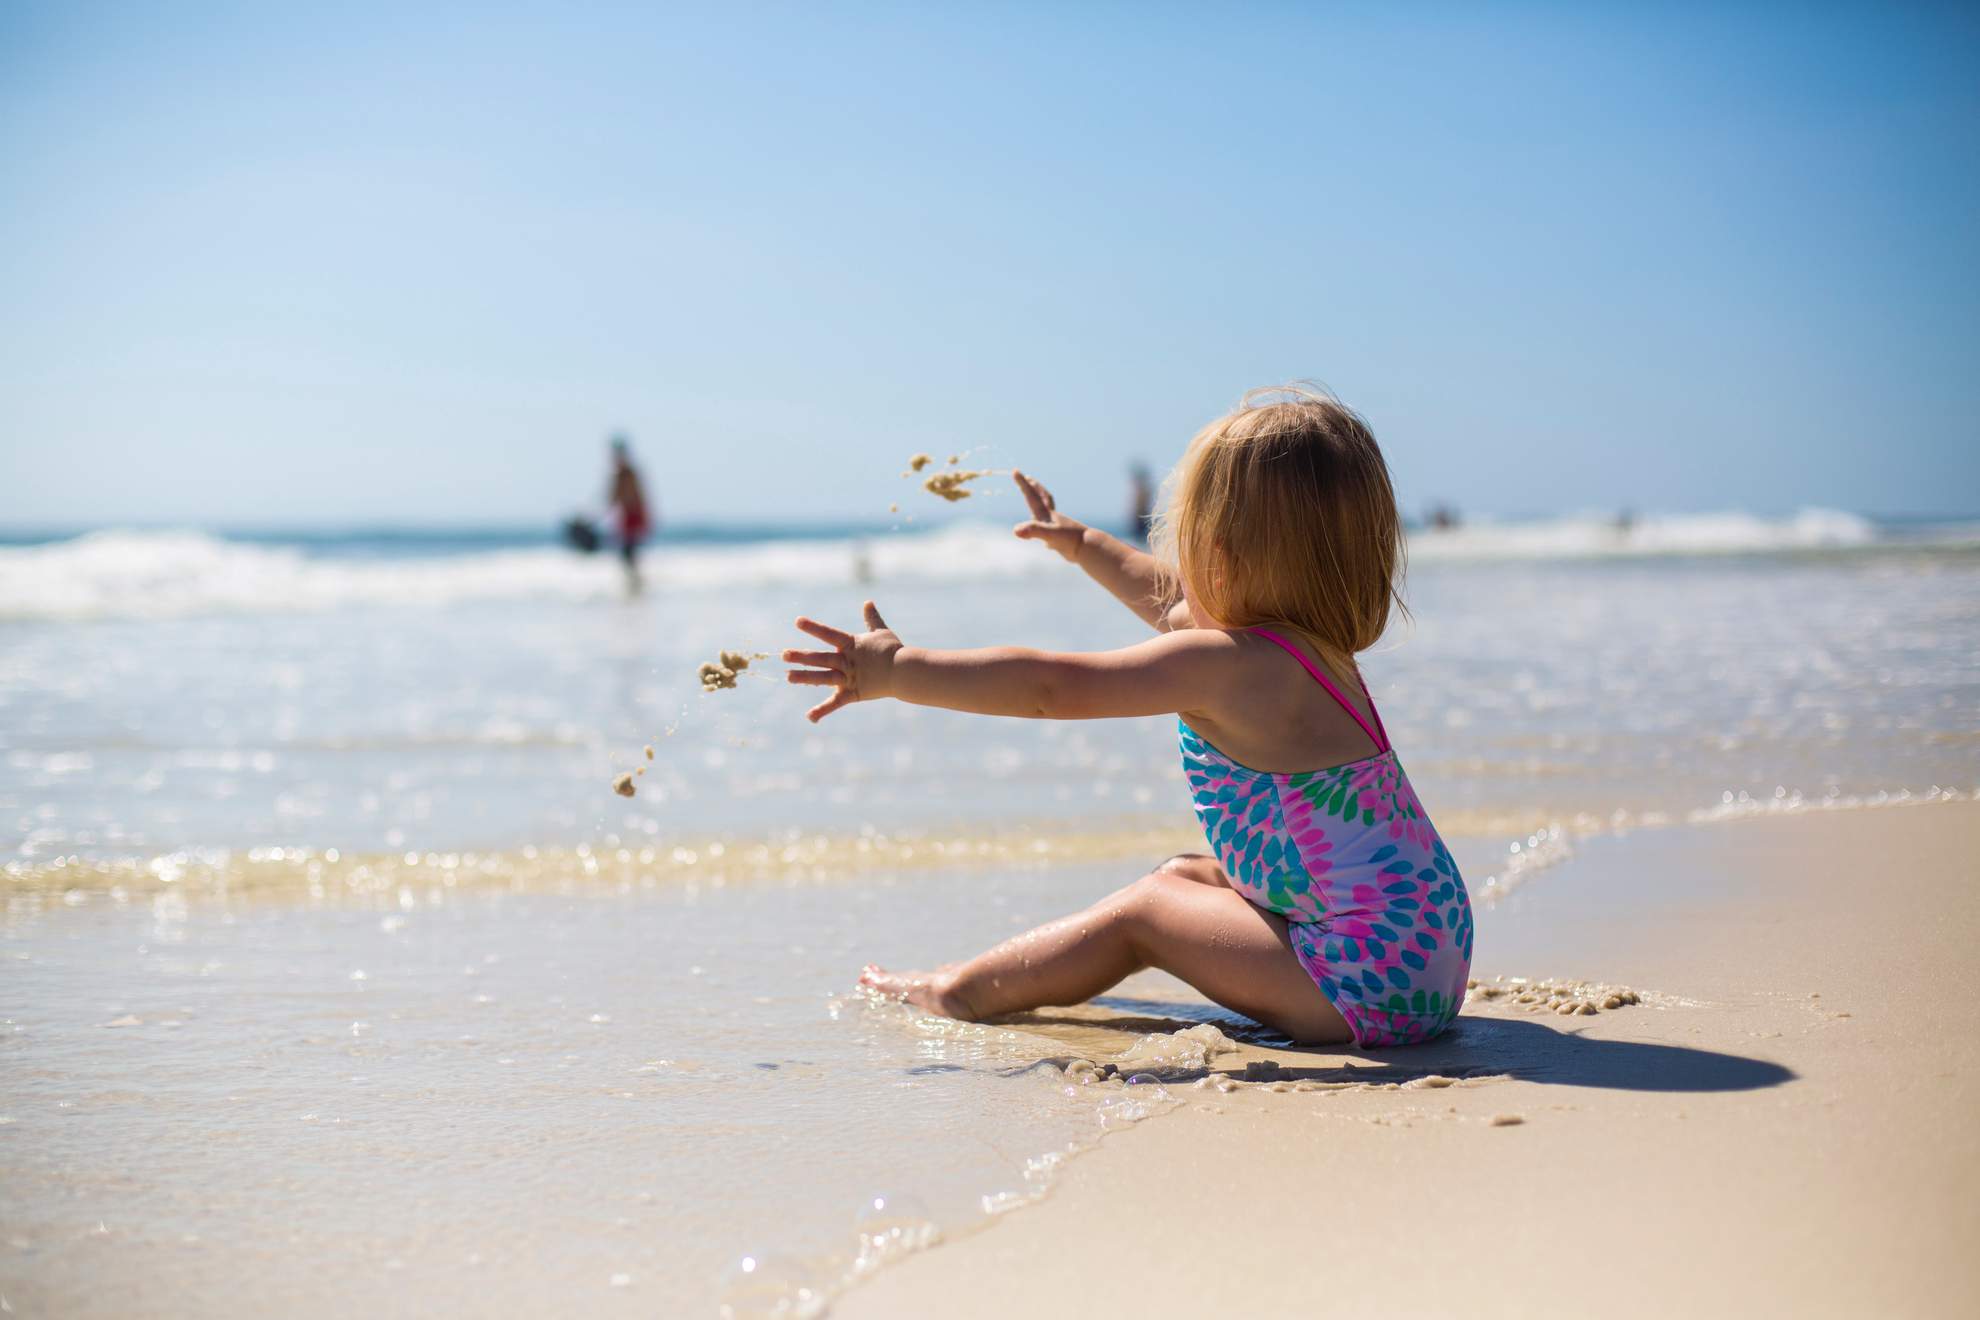 нужен ли ребенку купальник на пляже